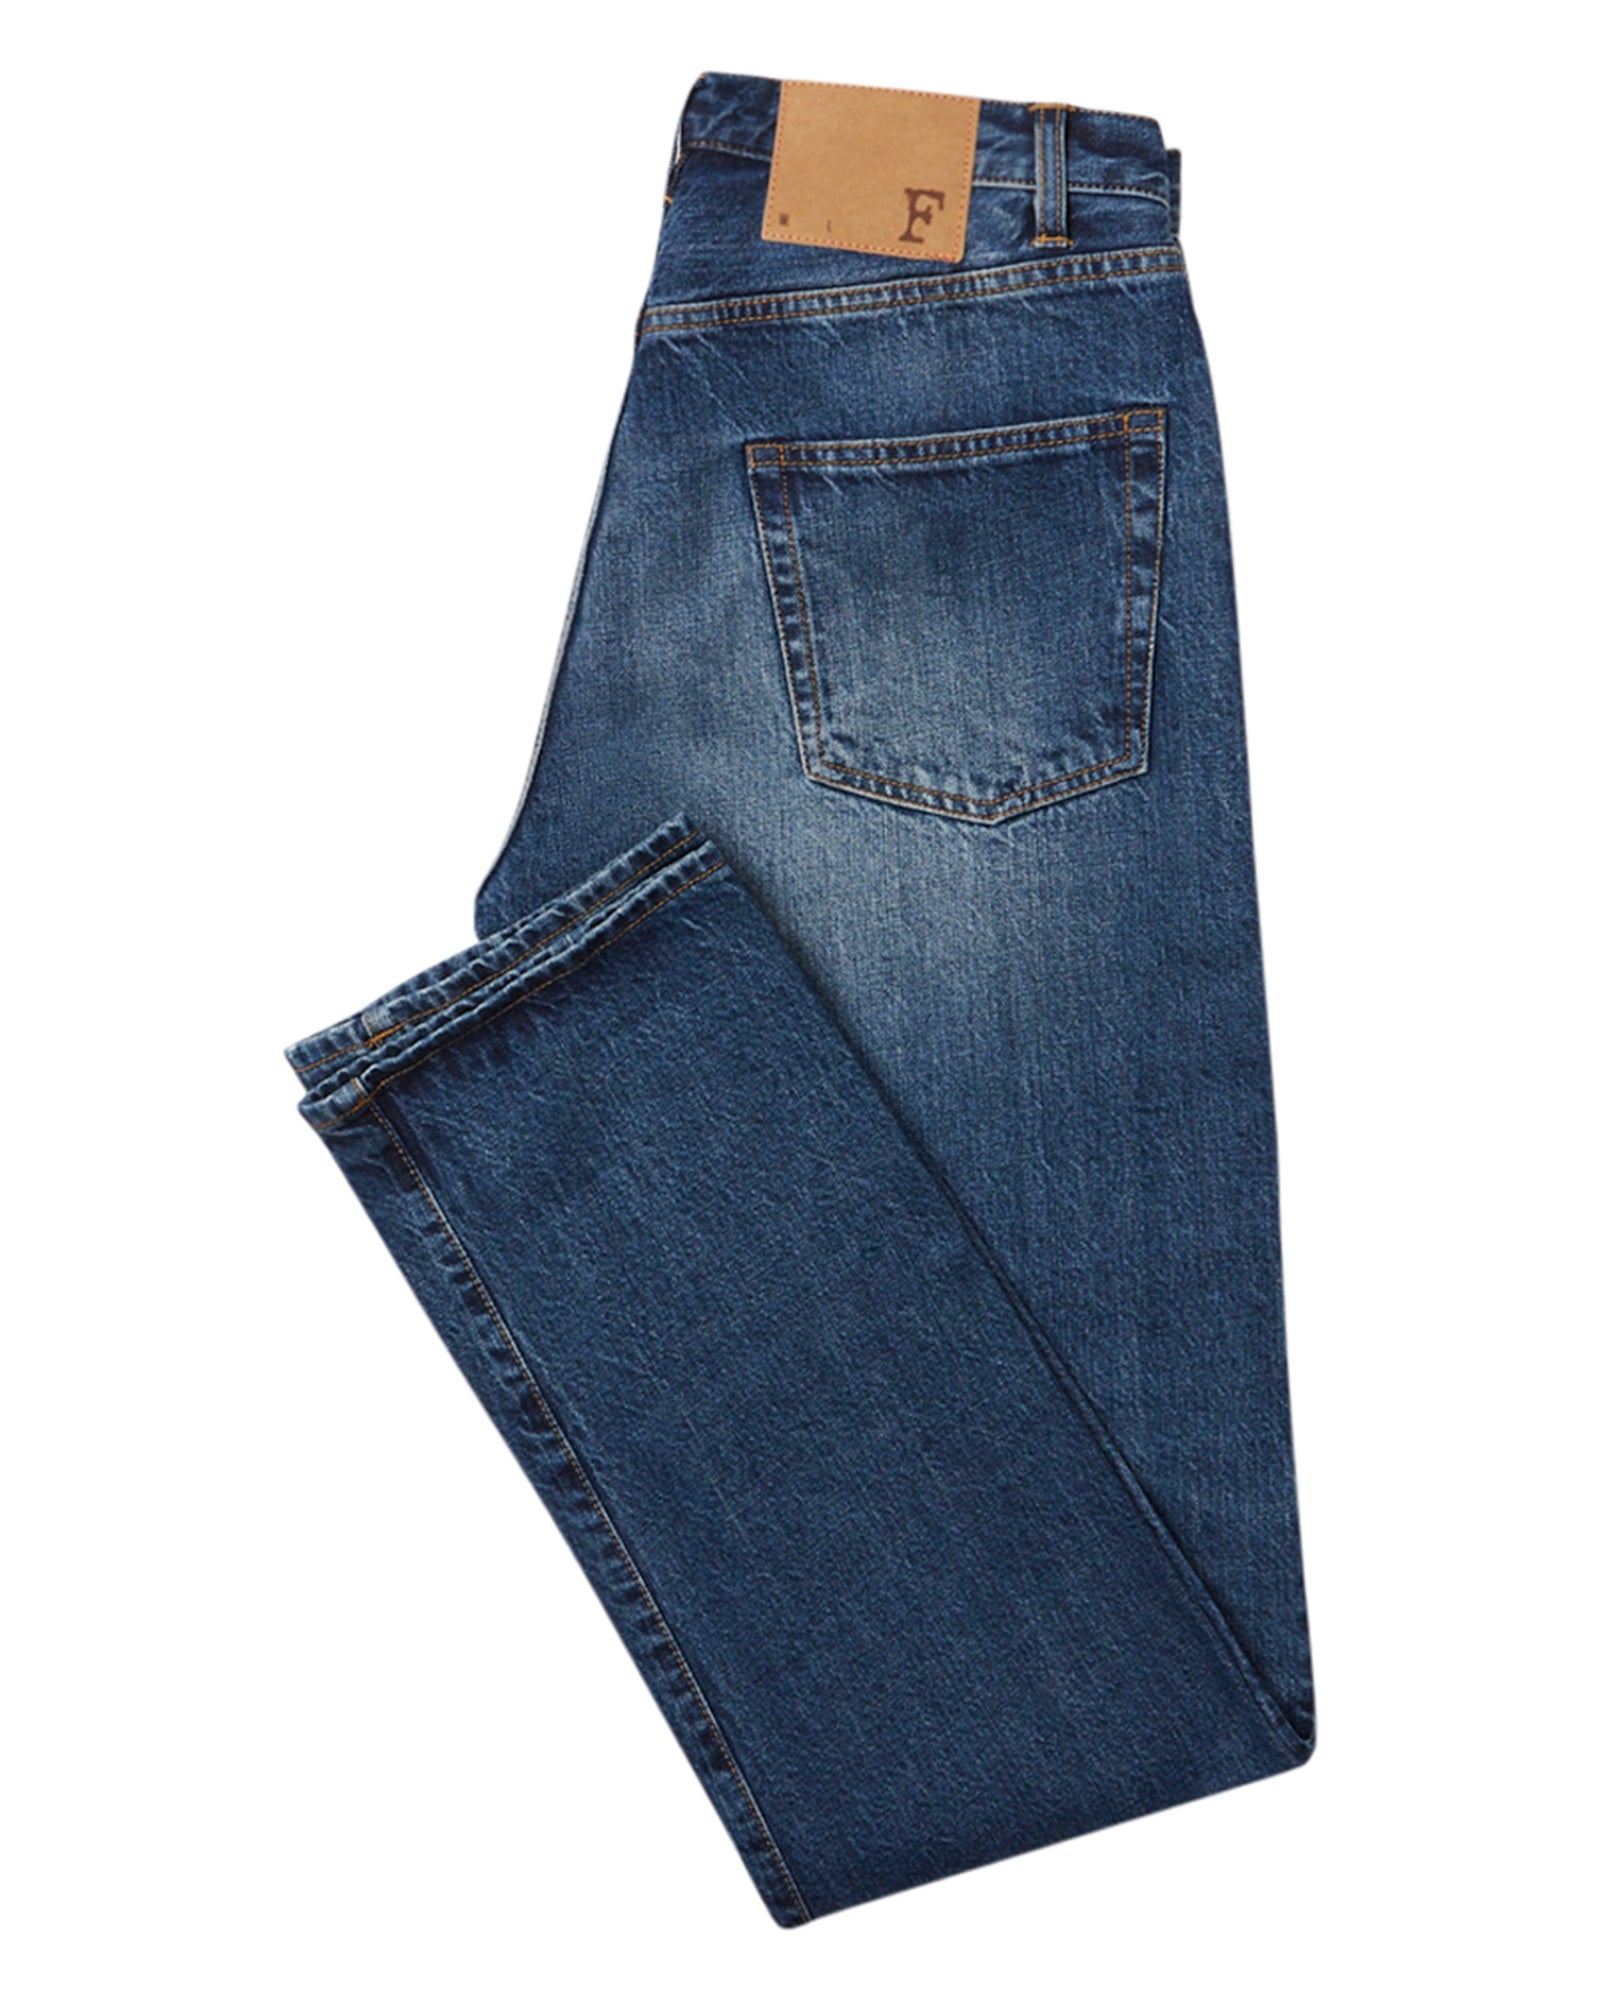 Fortela Super John Washed Denim Five Pocket Jeans